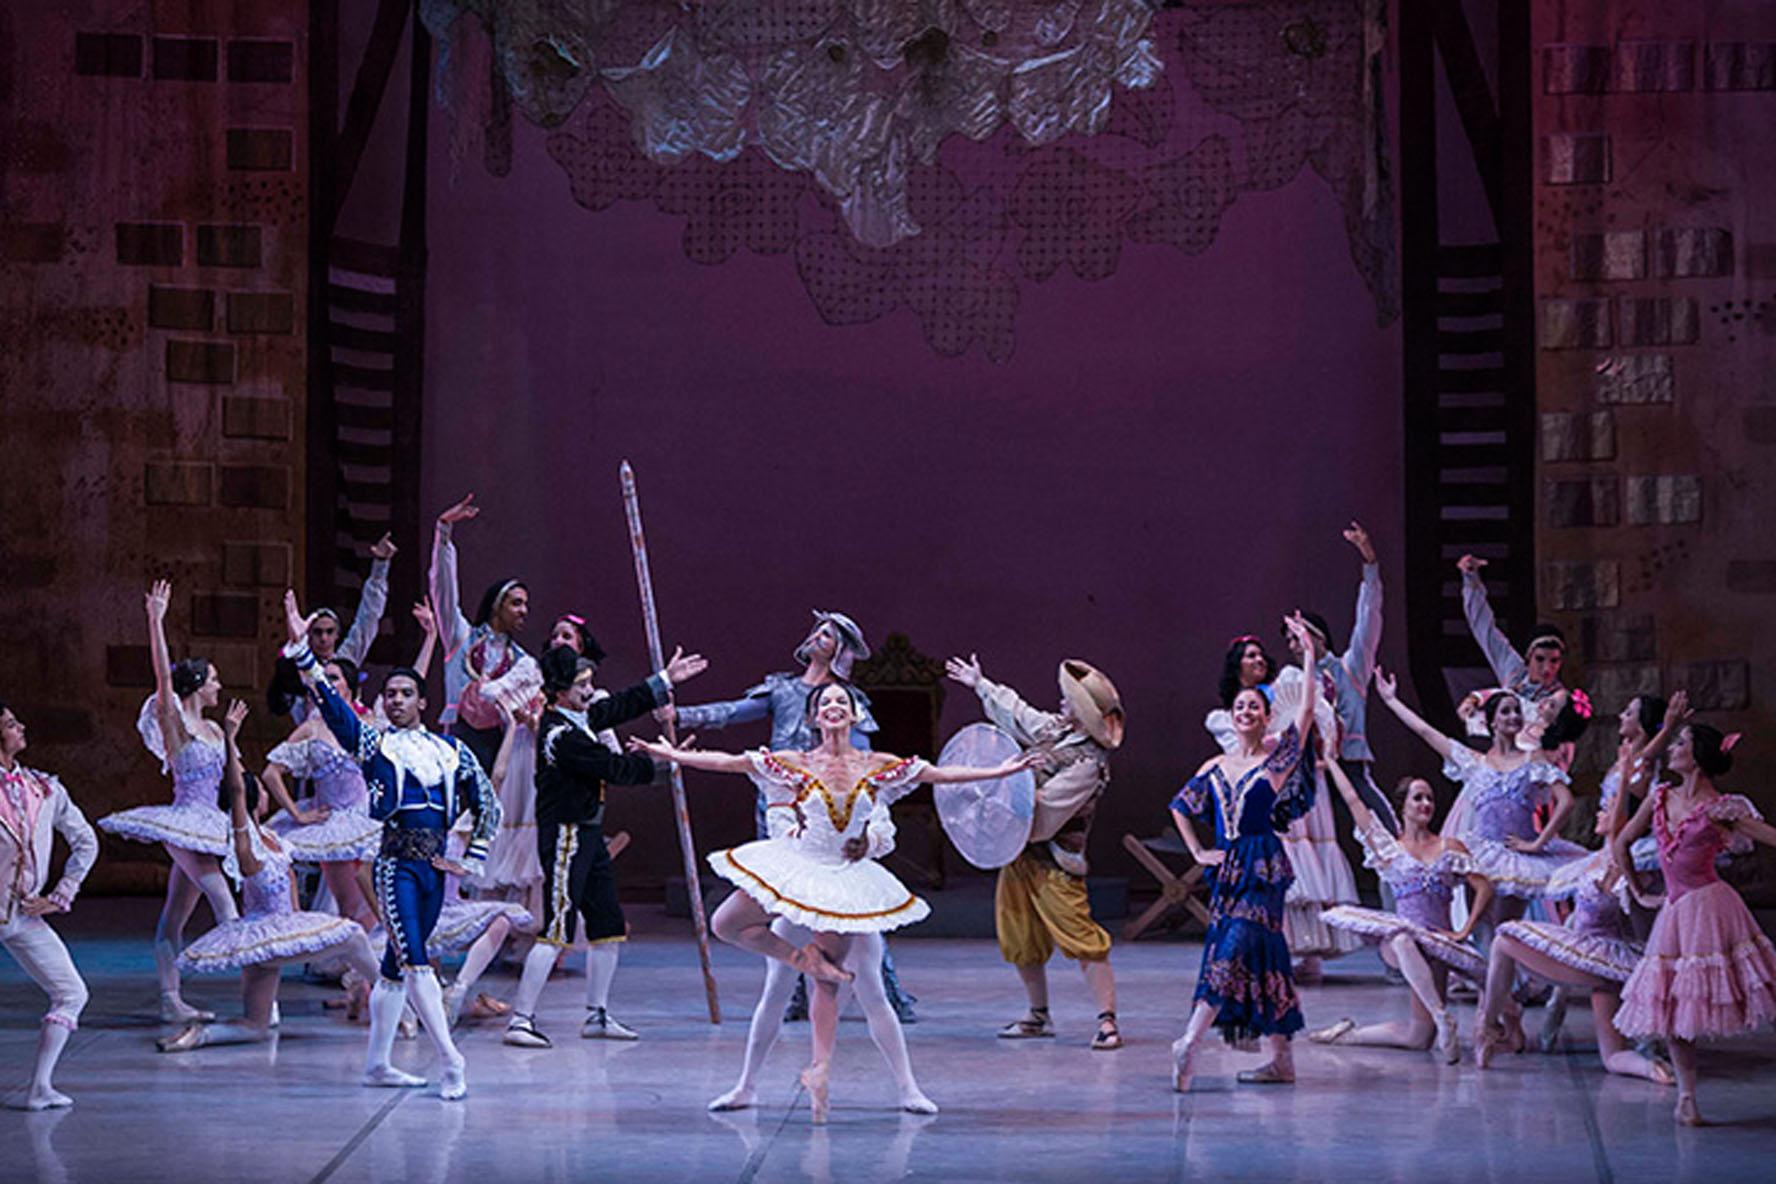 El Ballet Nacional de Cuba trae al Teatro Villamarta de Jerez su versión de 'Don Quijote'